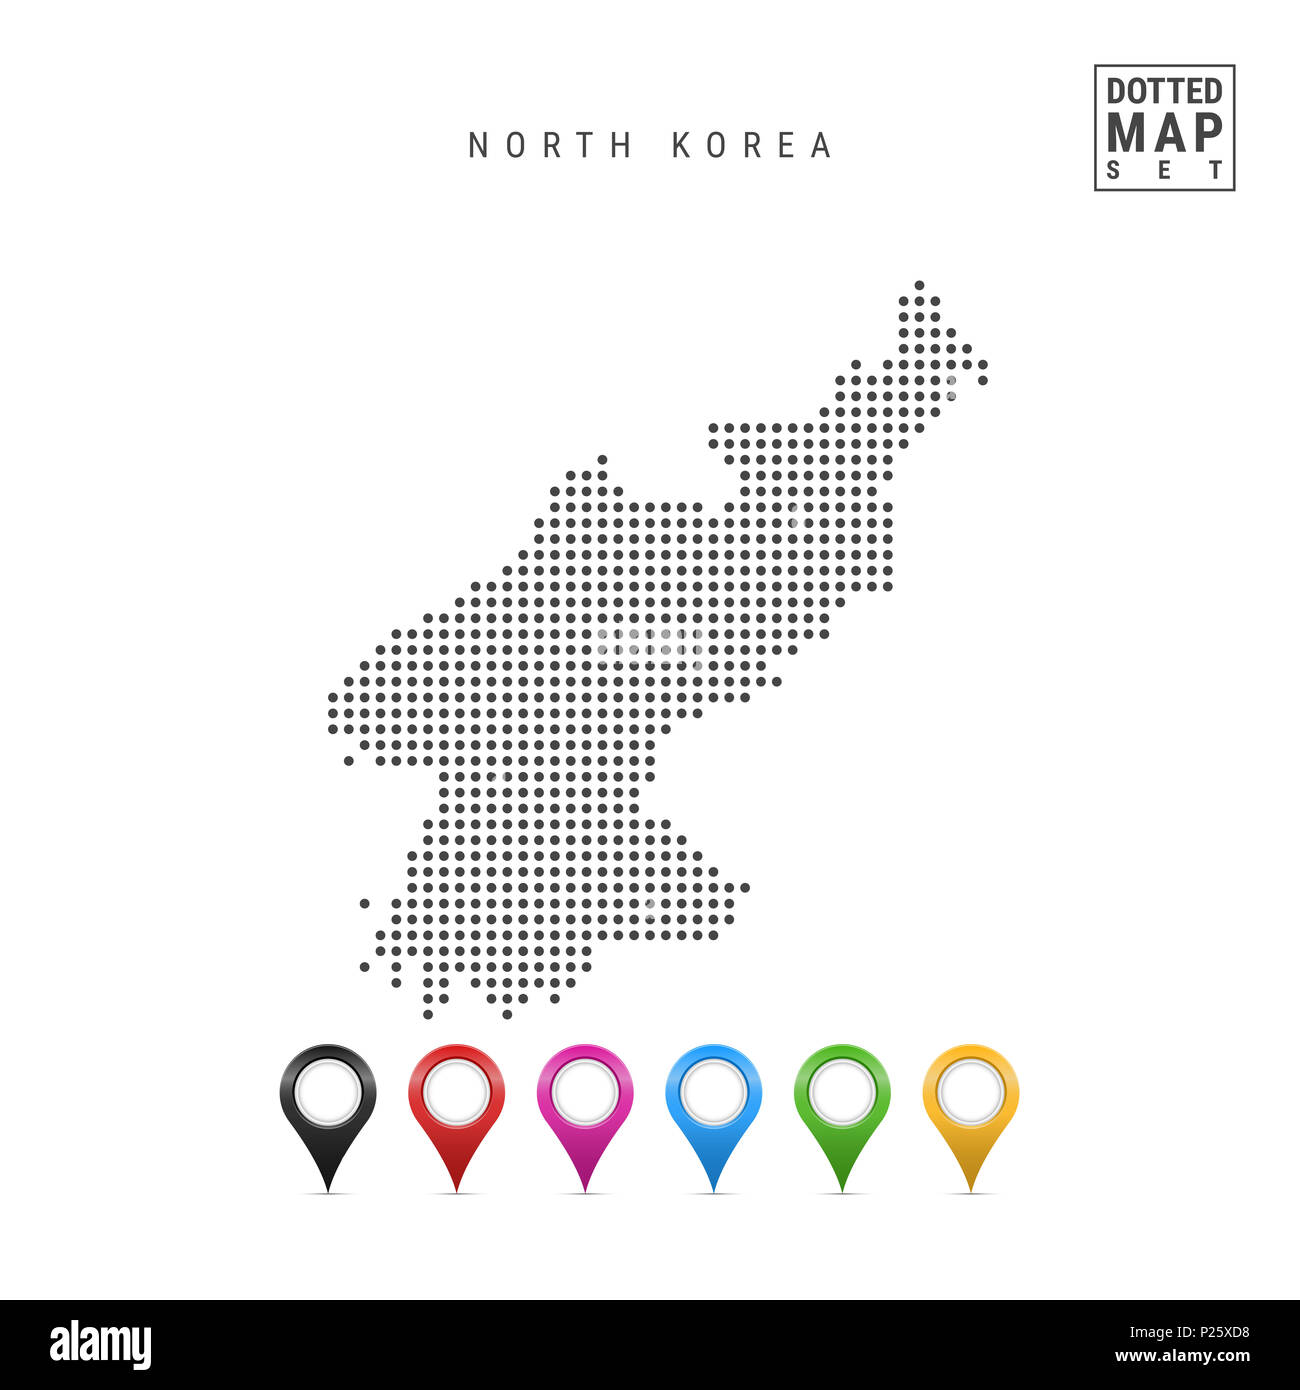 Gepunktete Karte von Nordkorea. Einfache Silhouette von Nordkorea. Eingestellt von bunten Karte Markierungen. Abbildung isoliert auf weißem Hintergrund. Stockfoto